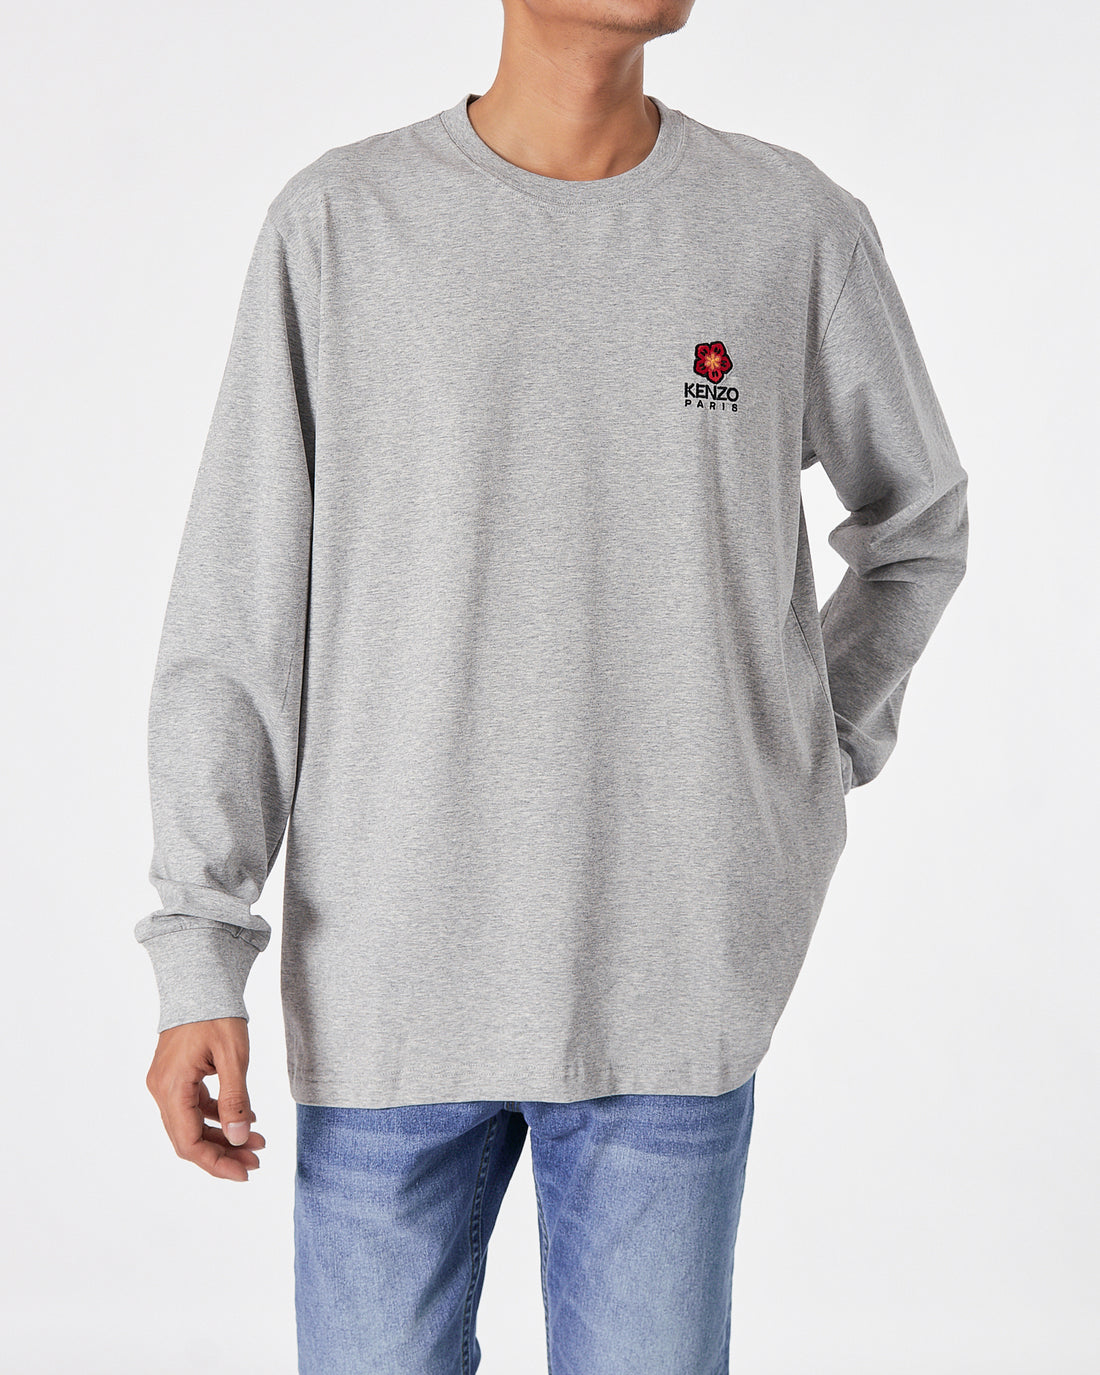 KEN Back Logo Printed Men Grey T-Shirt Long Sleeve 23.90